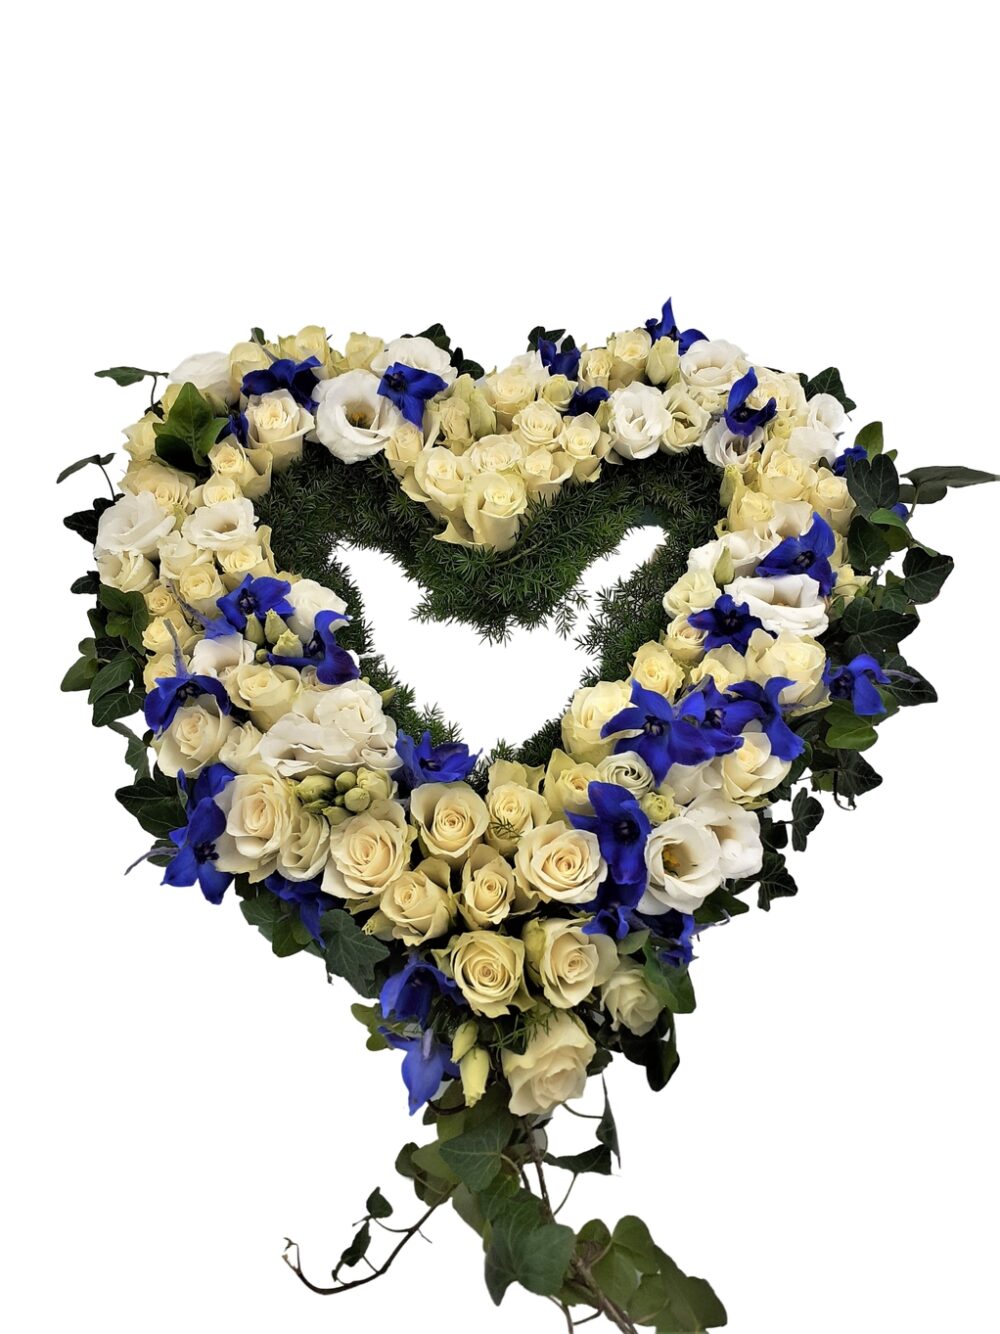 Begravningskrans i blått och vitt hos Bellis blomsterhandel.